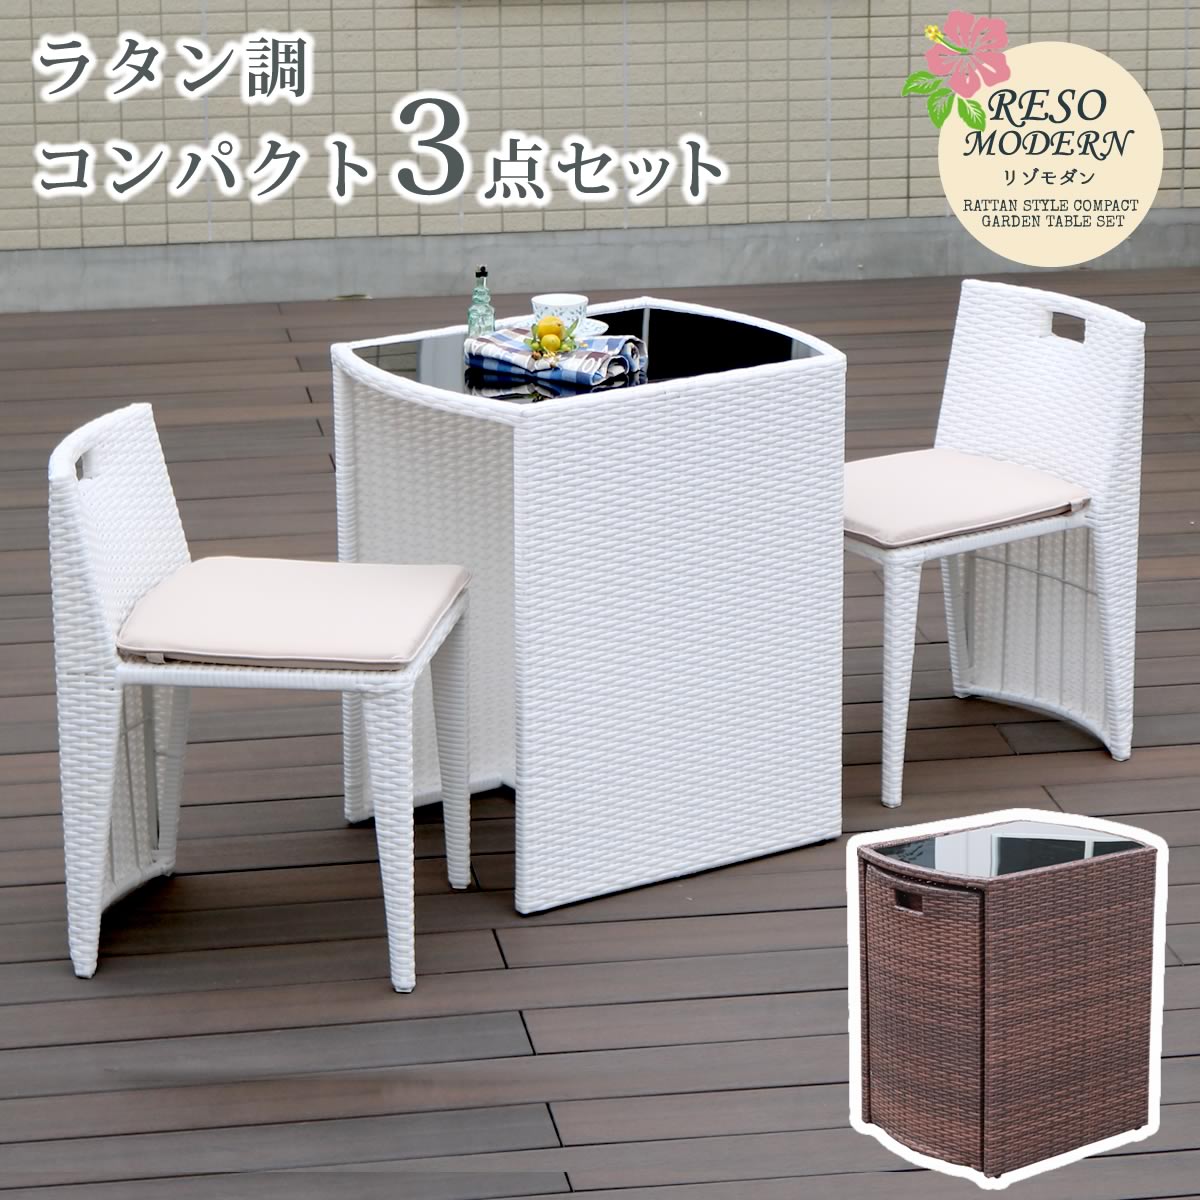 ラタン調コンパクトテーブル3点セット リゾモダン CP001-3PSETを激安で販売する京都の村田家具